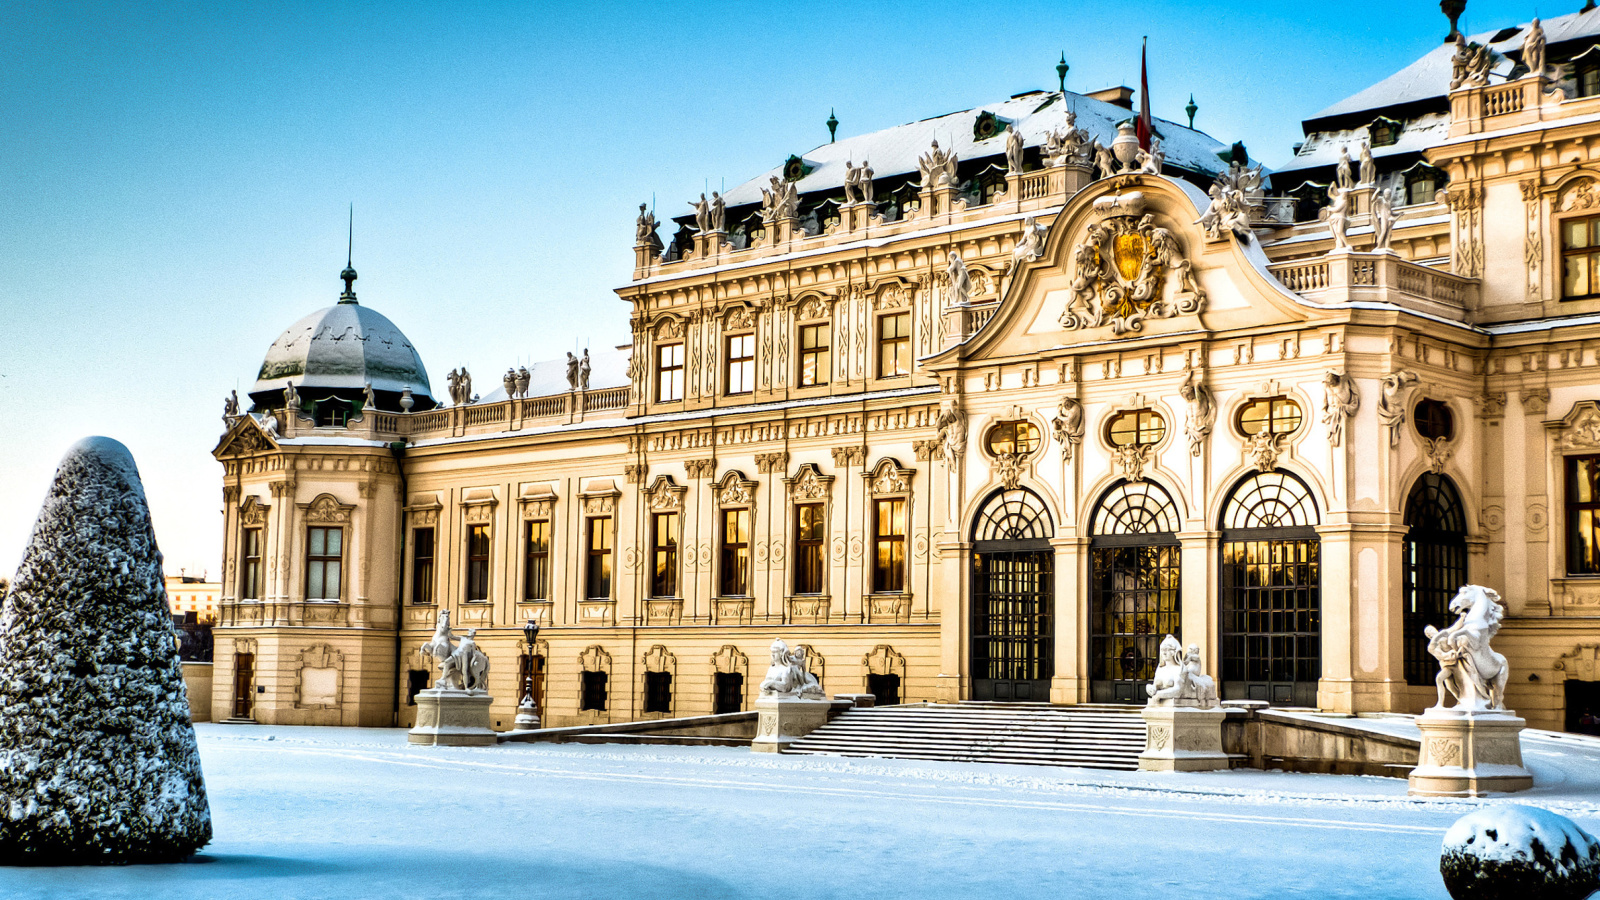 Das Belvedere Baroque Palace in Vienna Wallpaper 1600x900